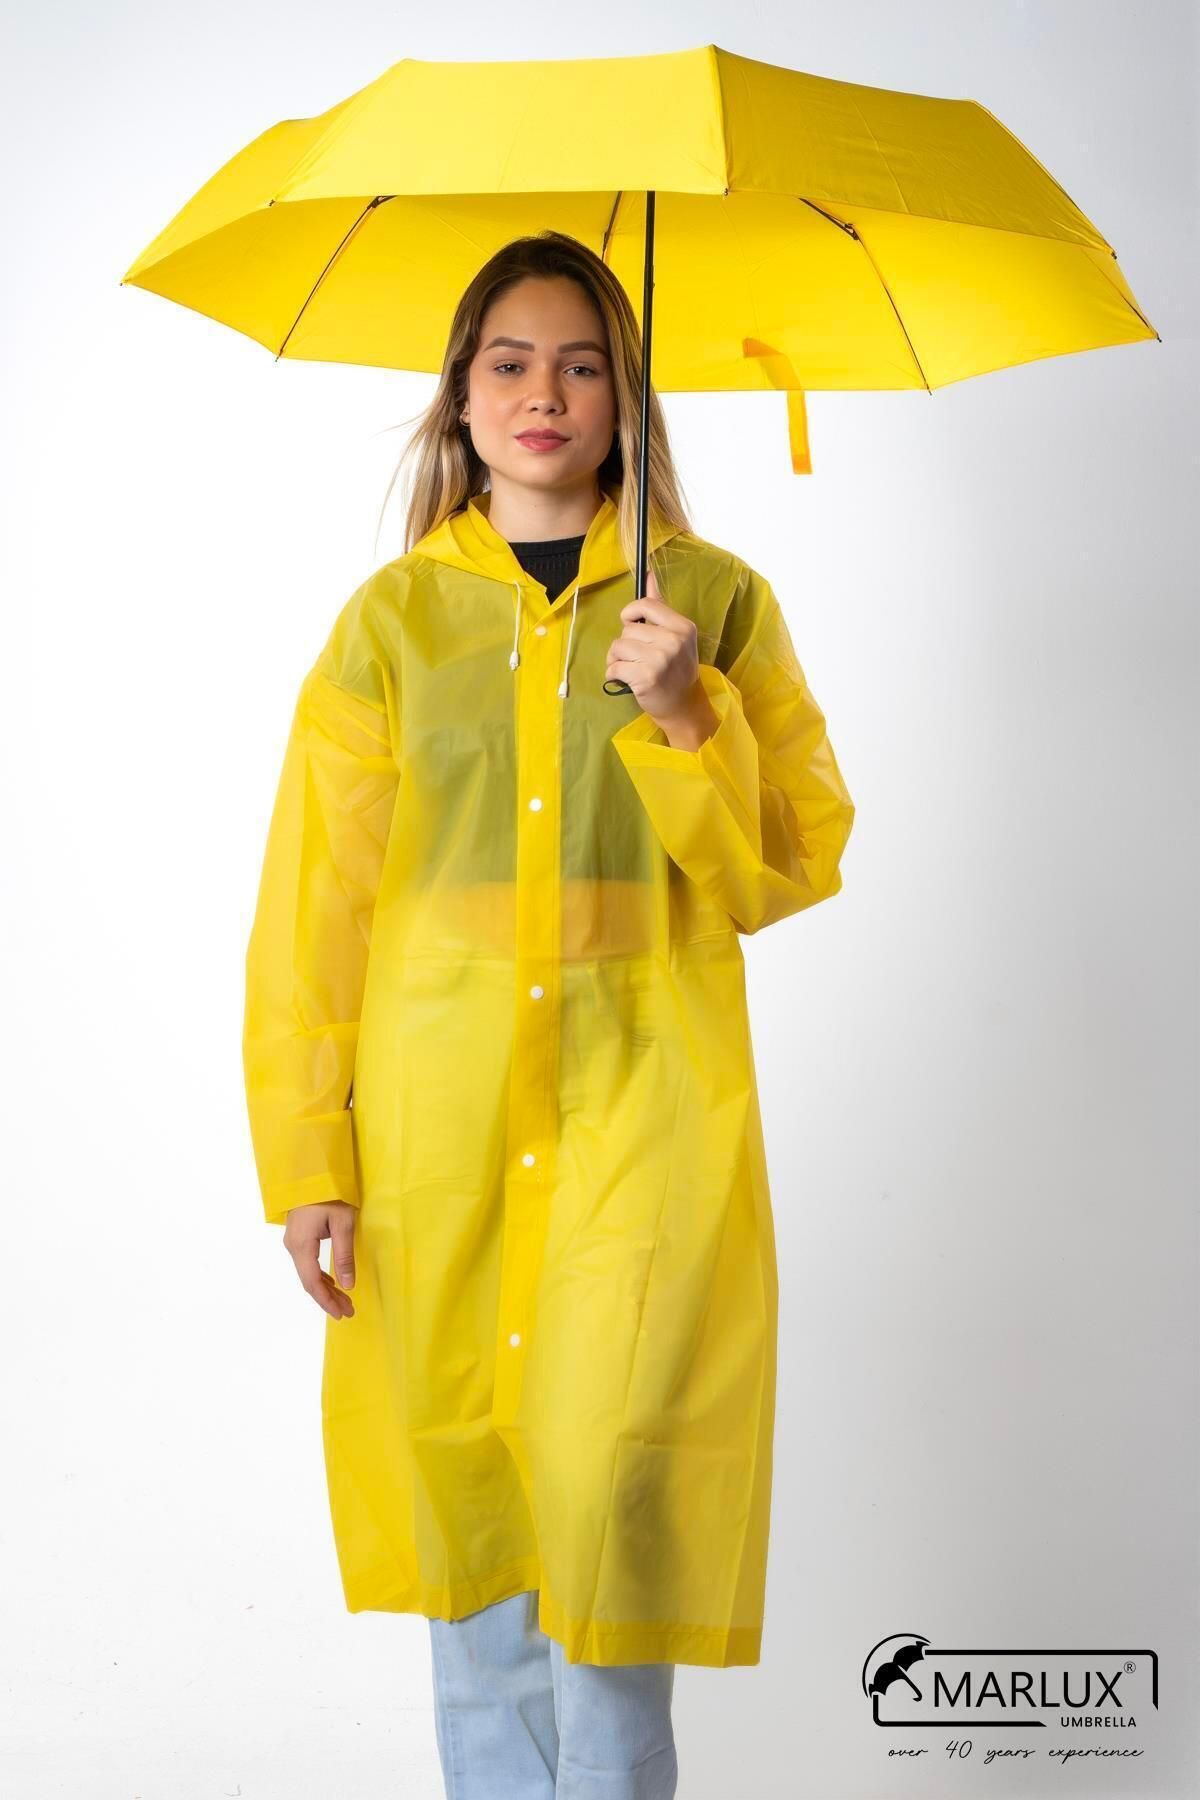 Marlux Sarı Süper Mini Kadın Şemsiye M21mar298lr002